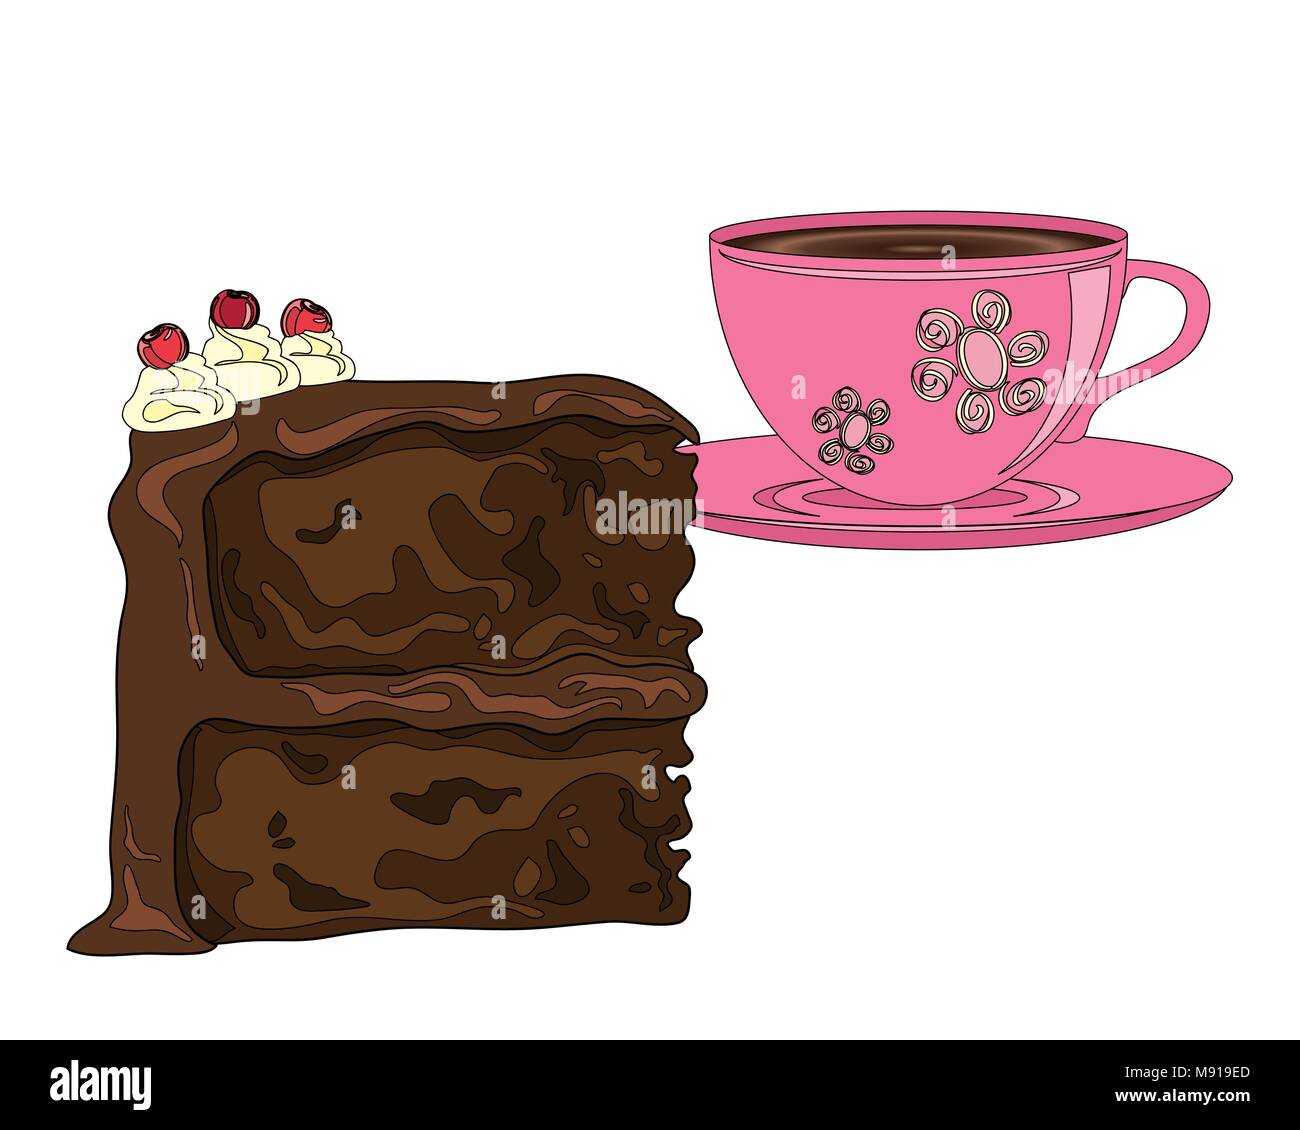 Un vecteur illustration en format eps 10 de gâteau au chocolat avec décoration de cerise avec une tasse de café fort sur un fond blanc Illustration de Vecteur